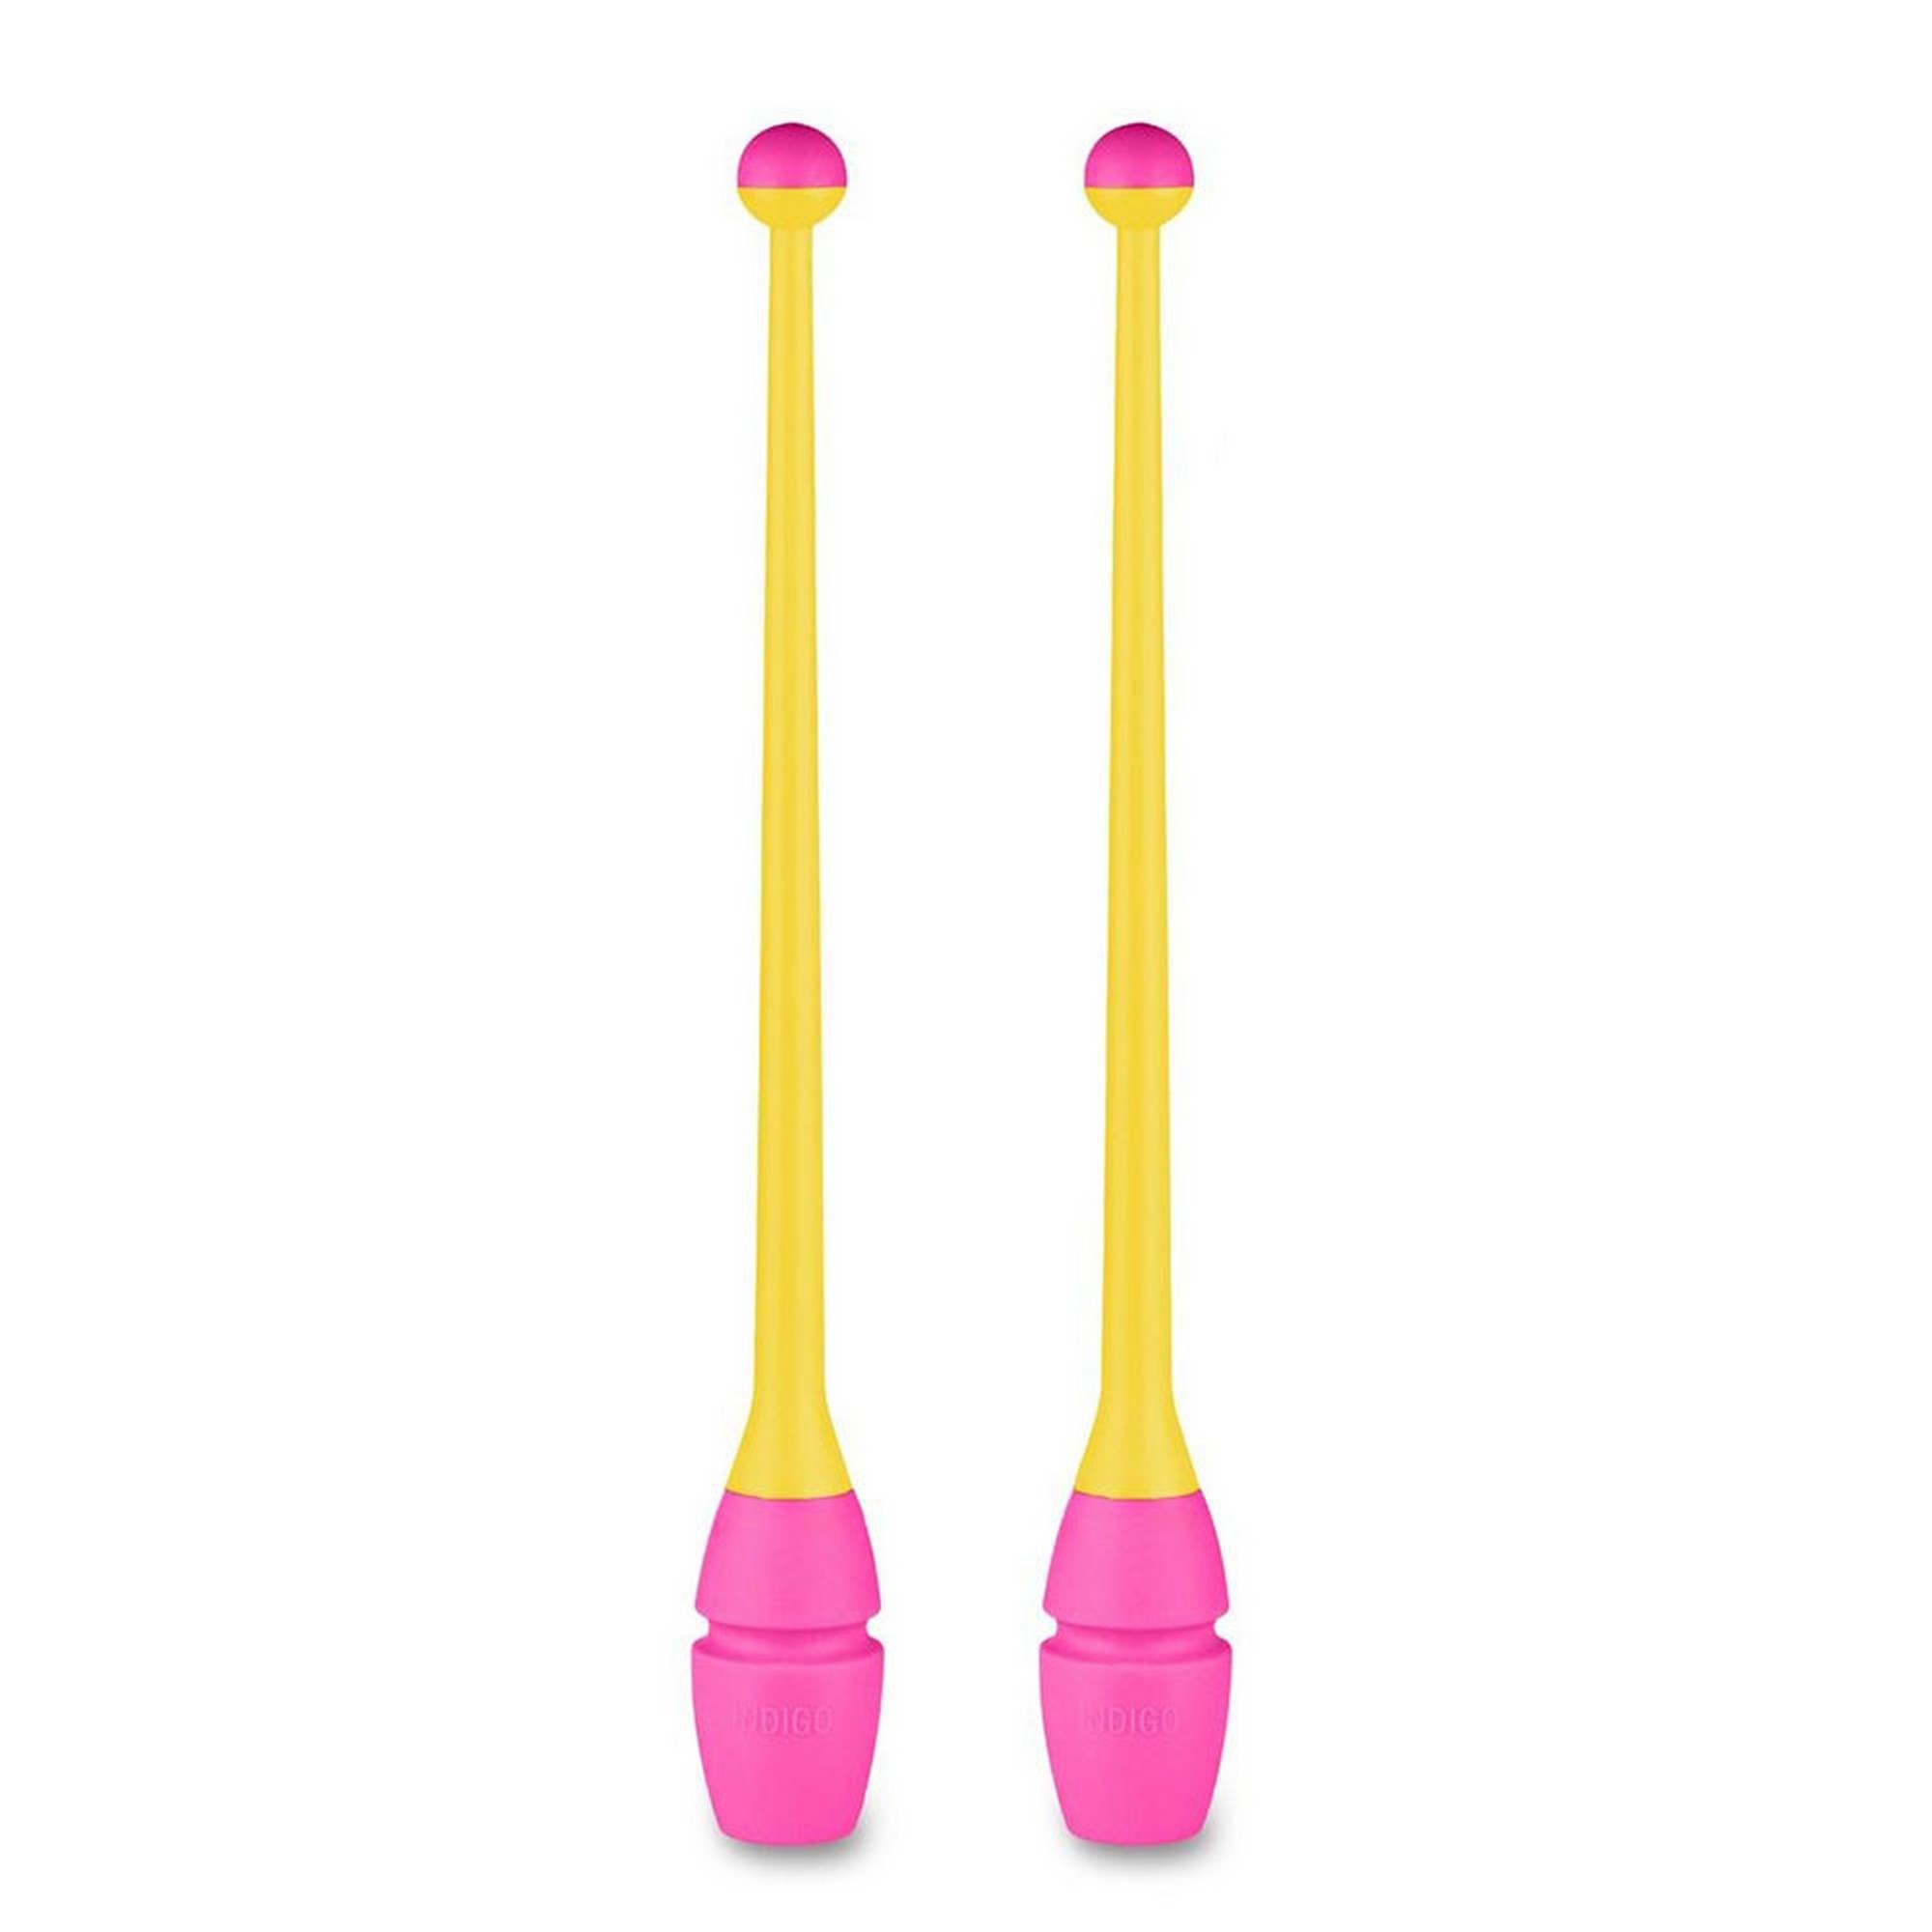 Булавы для художественной гимнастики Indigo 41 см, пластик, каучук, 2шт IN018-YP желтый-розовый 2000_2000